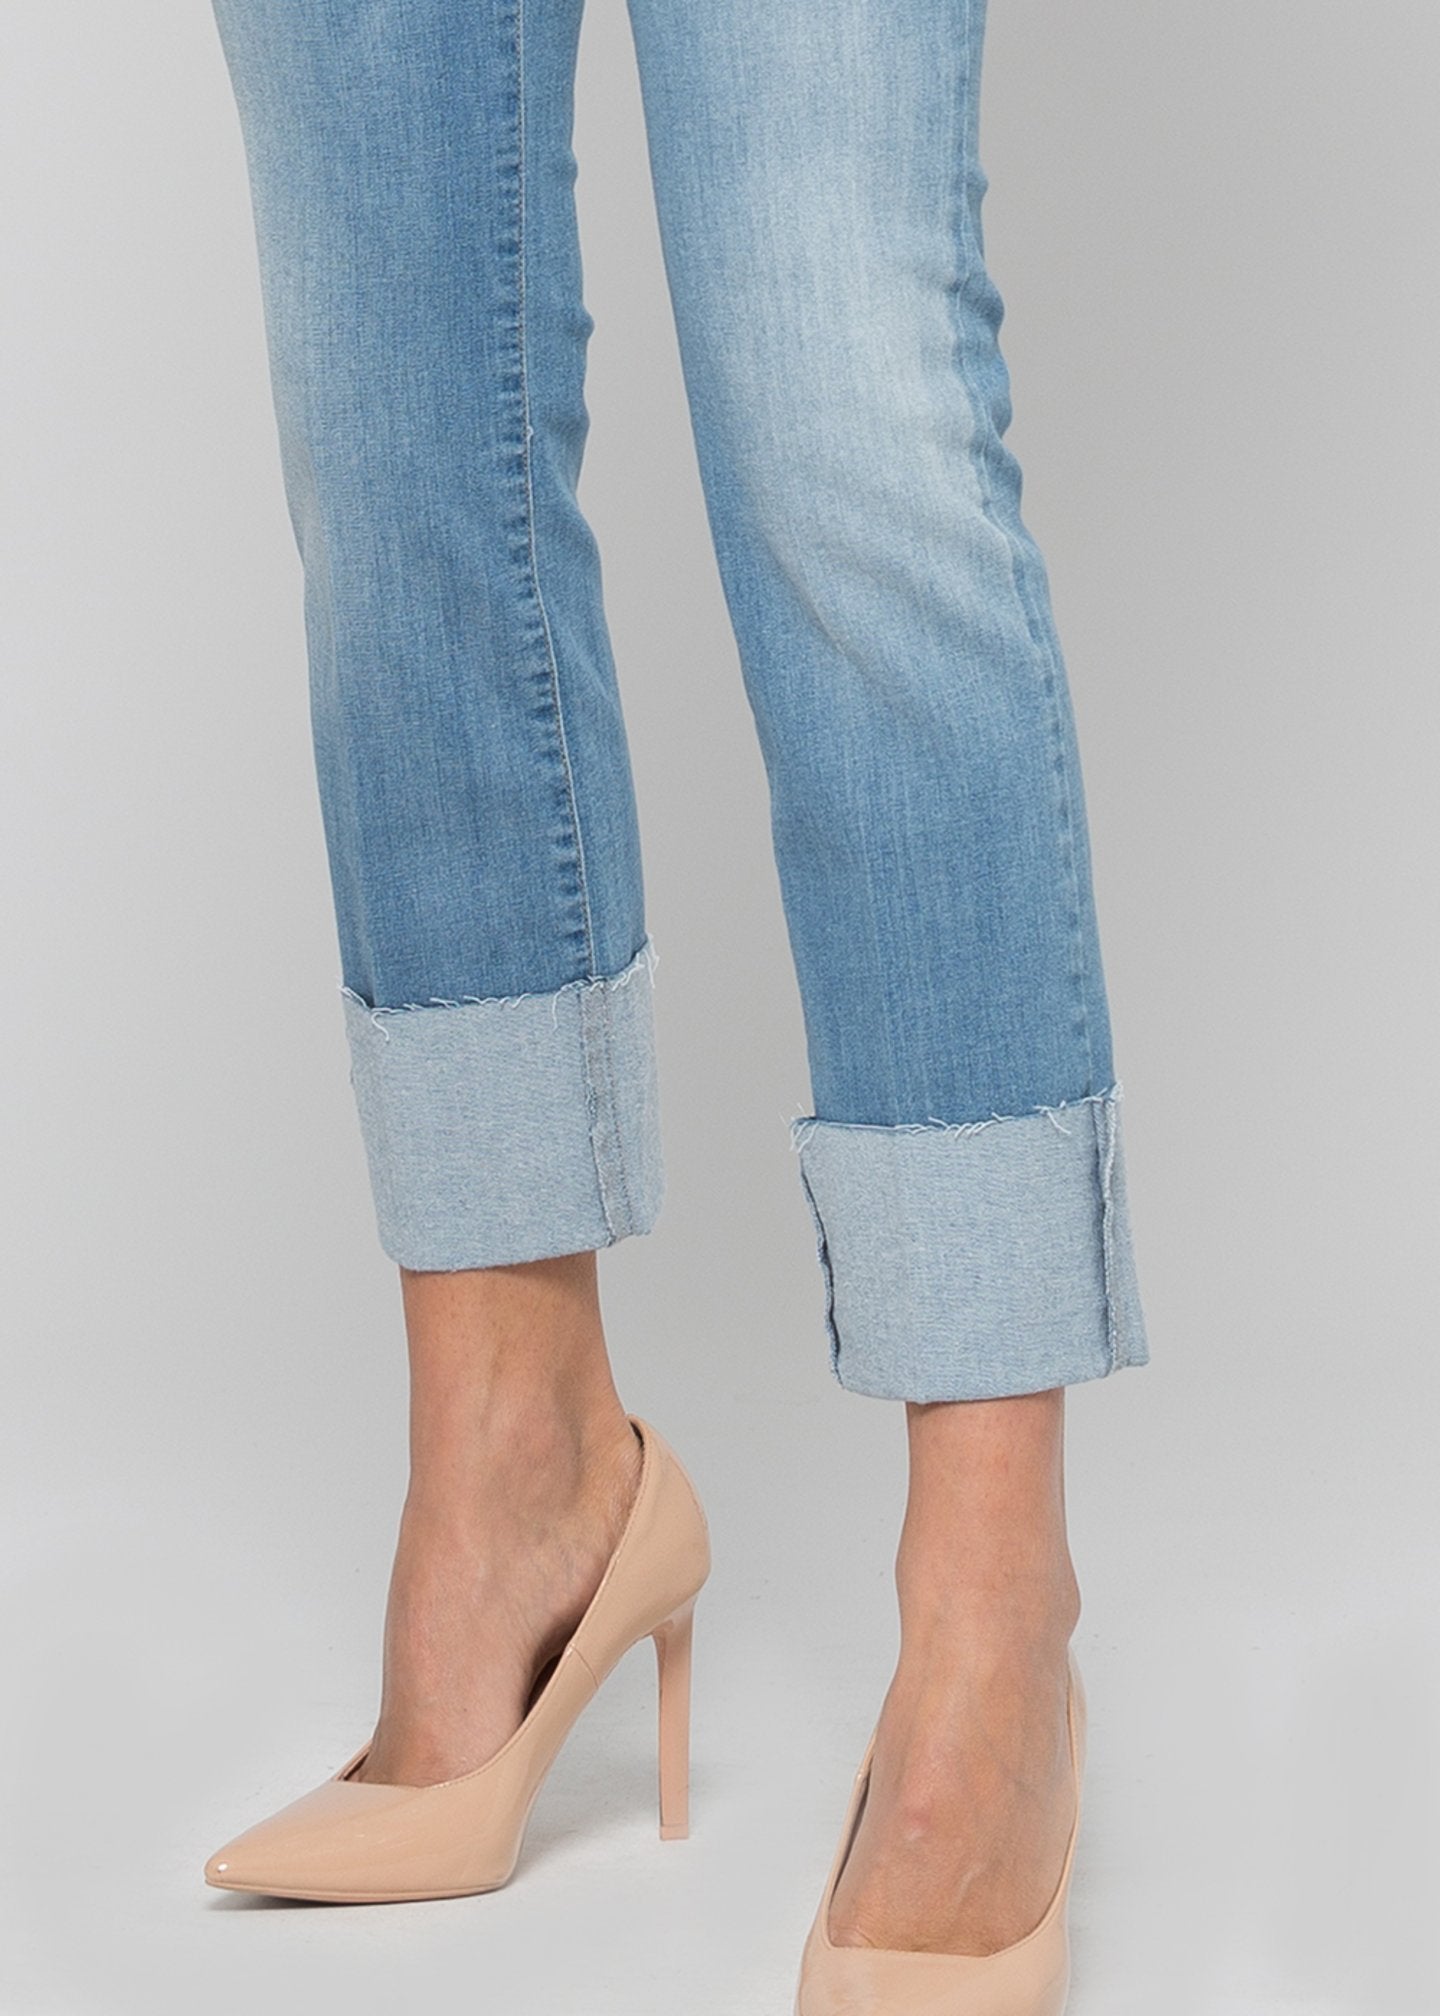 Pantalone denim slim leg, bottom up / Jeans - Ideal Moda